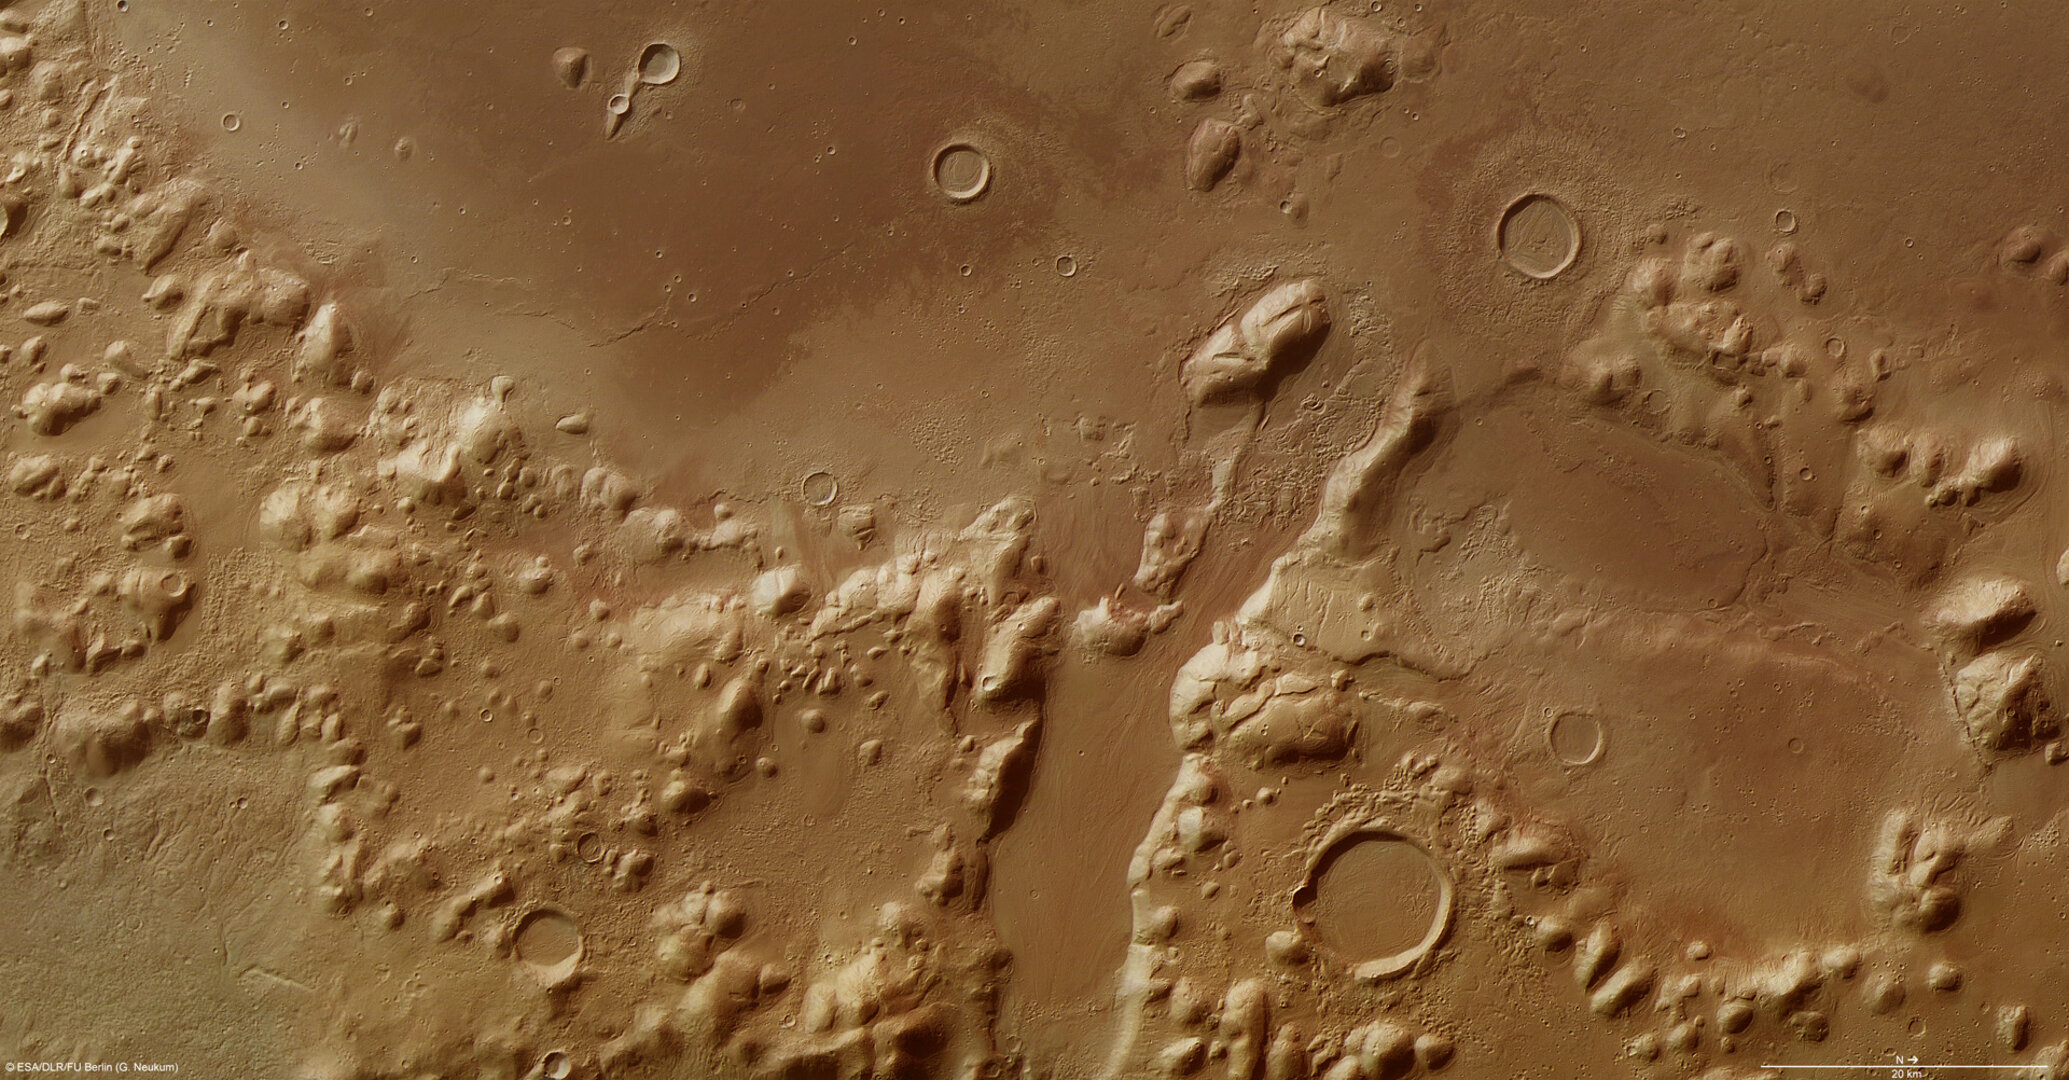 Phlegra Montes auf dem Mars